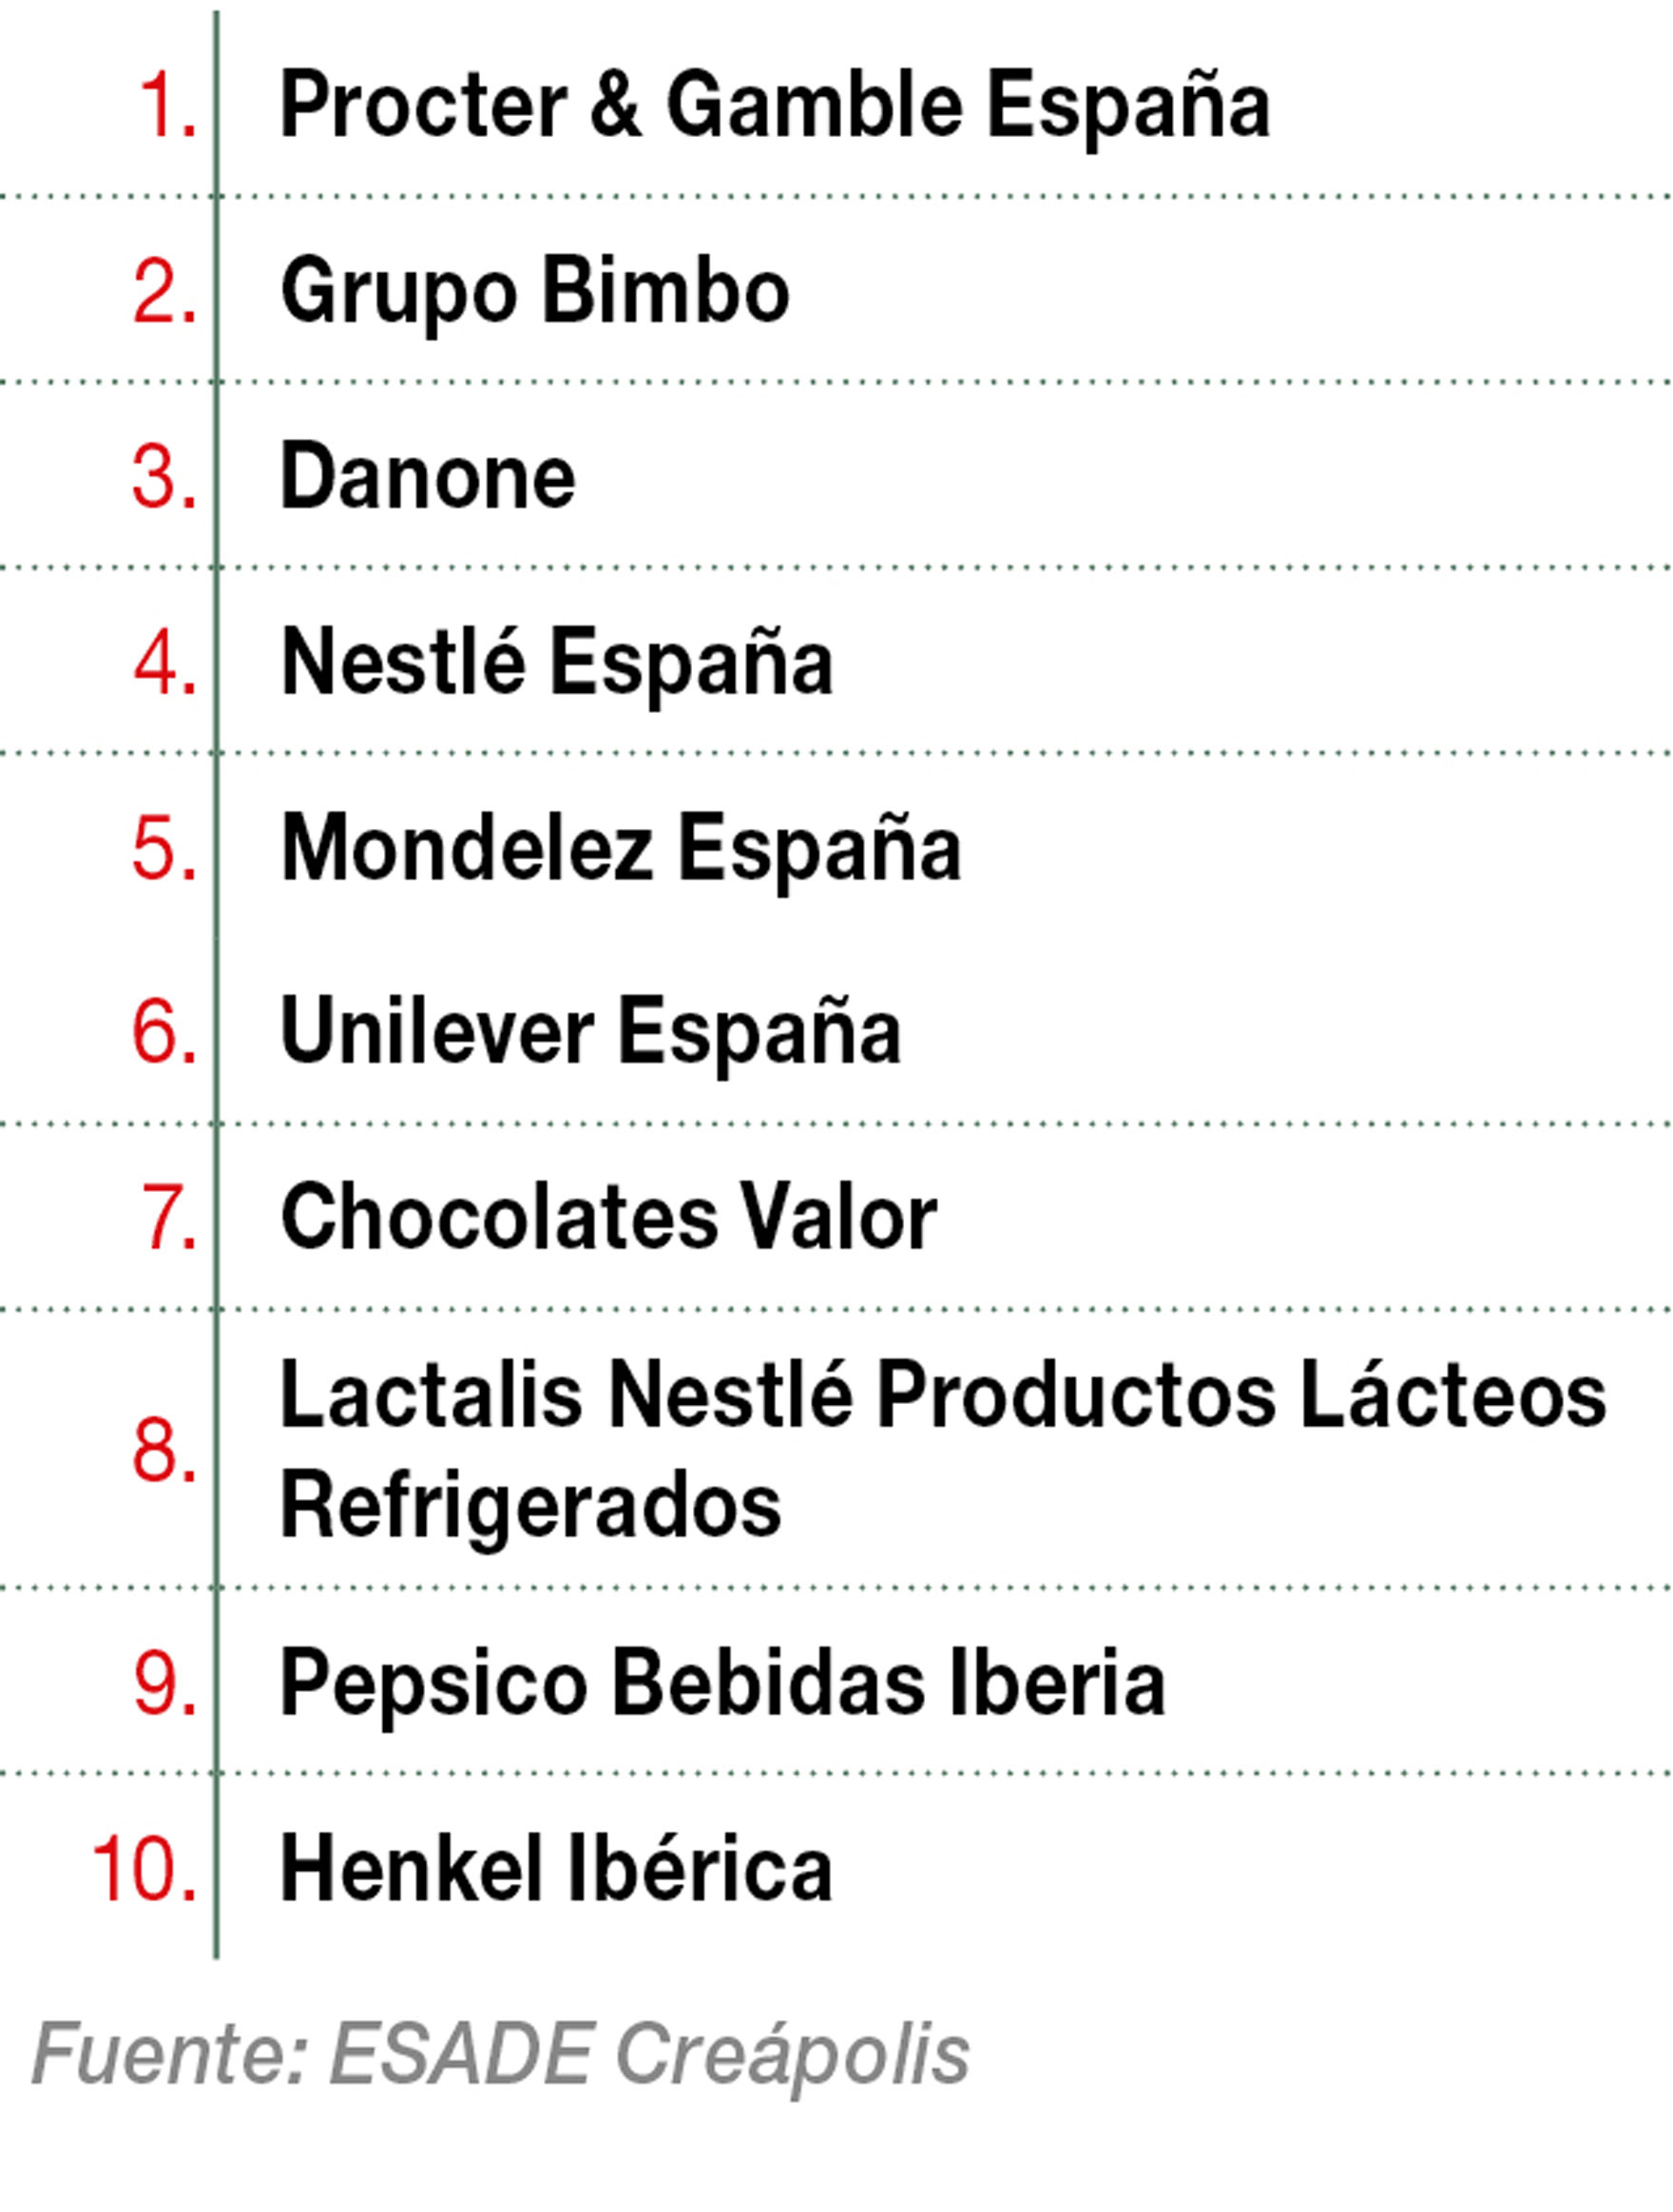 Top10 compañías con mayor número de innovaciones